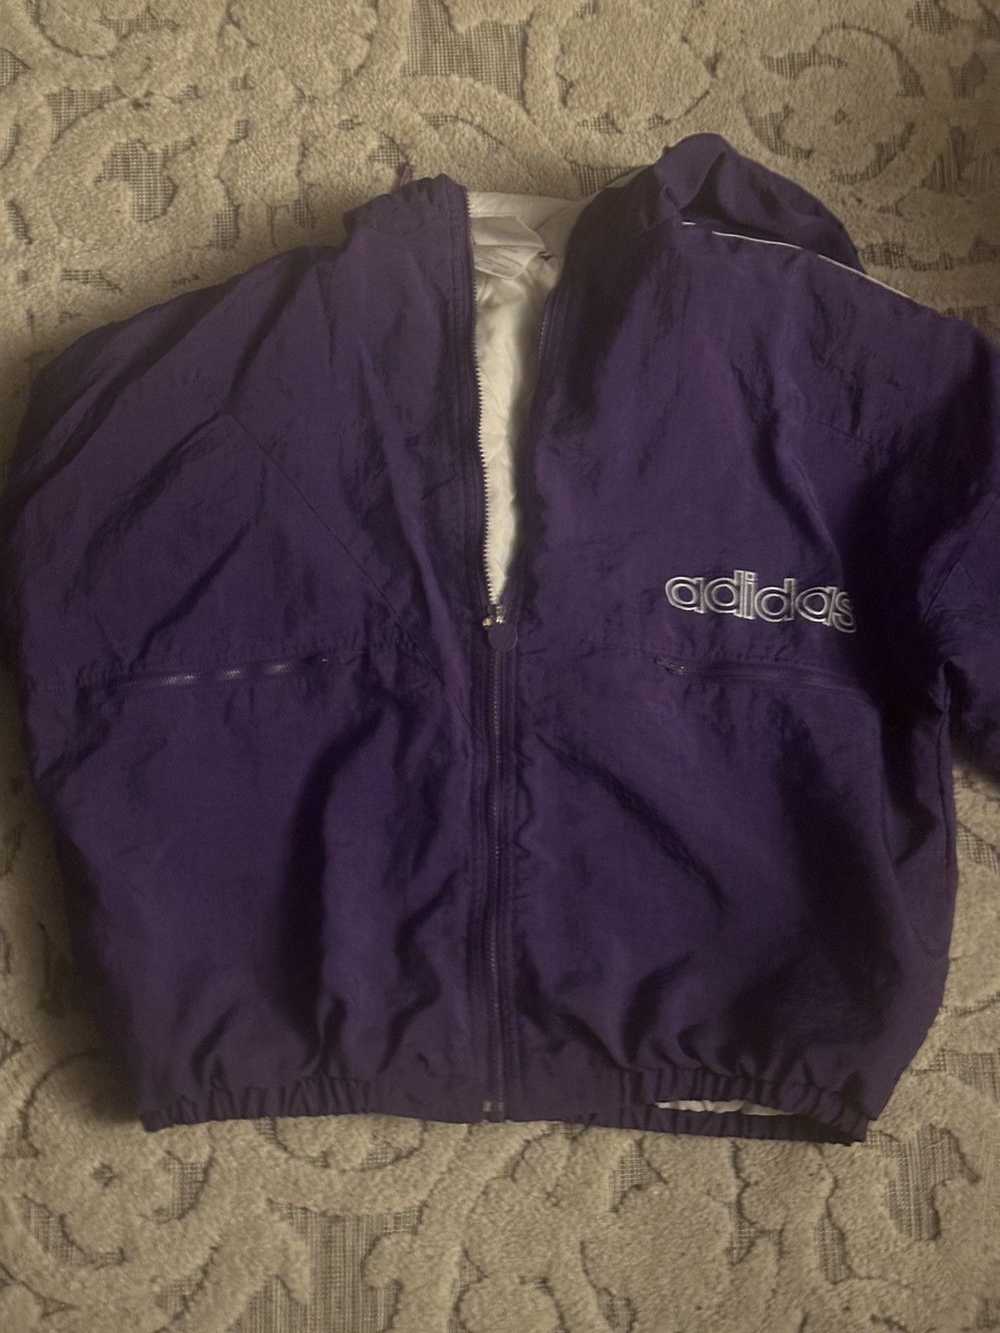 Adidas Vintage 90’s Adidas purple Puffy Jacket 90s - image 4